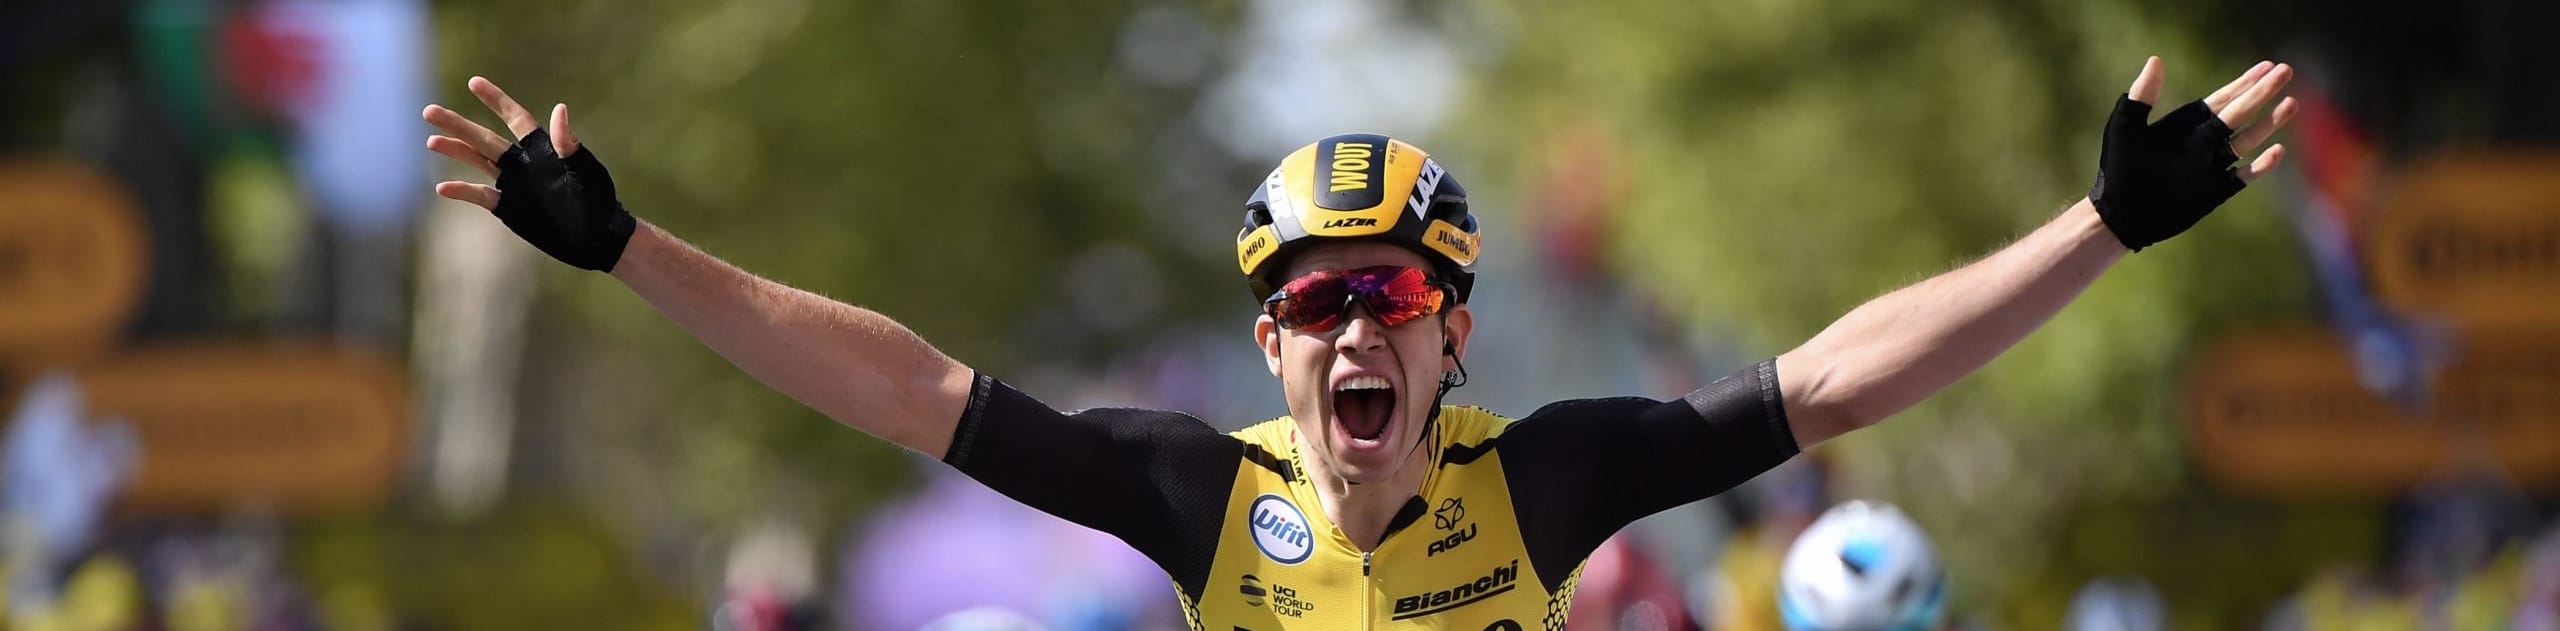 Tour De France 2020: quote, scommesse e pronostico prima tappa